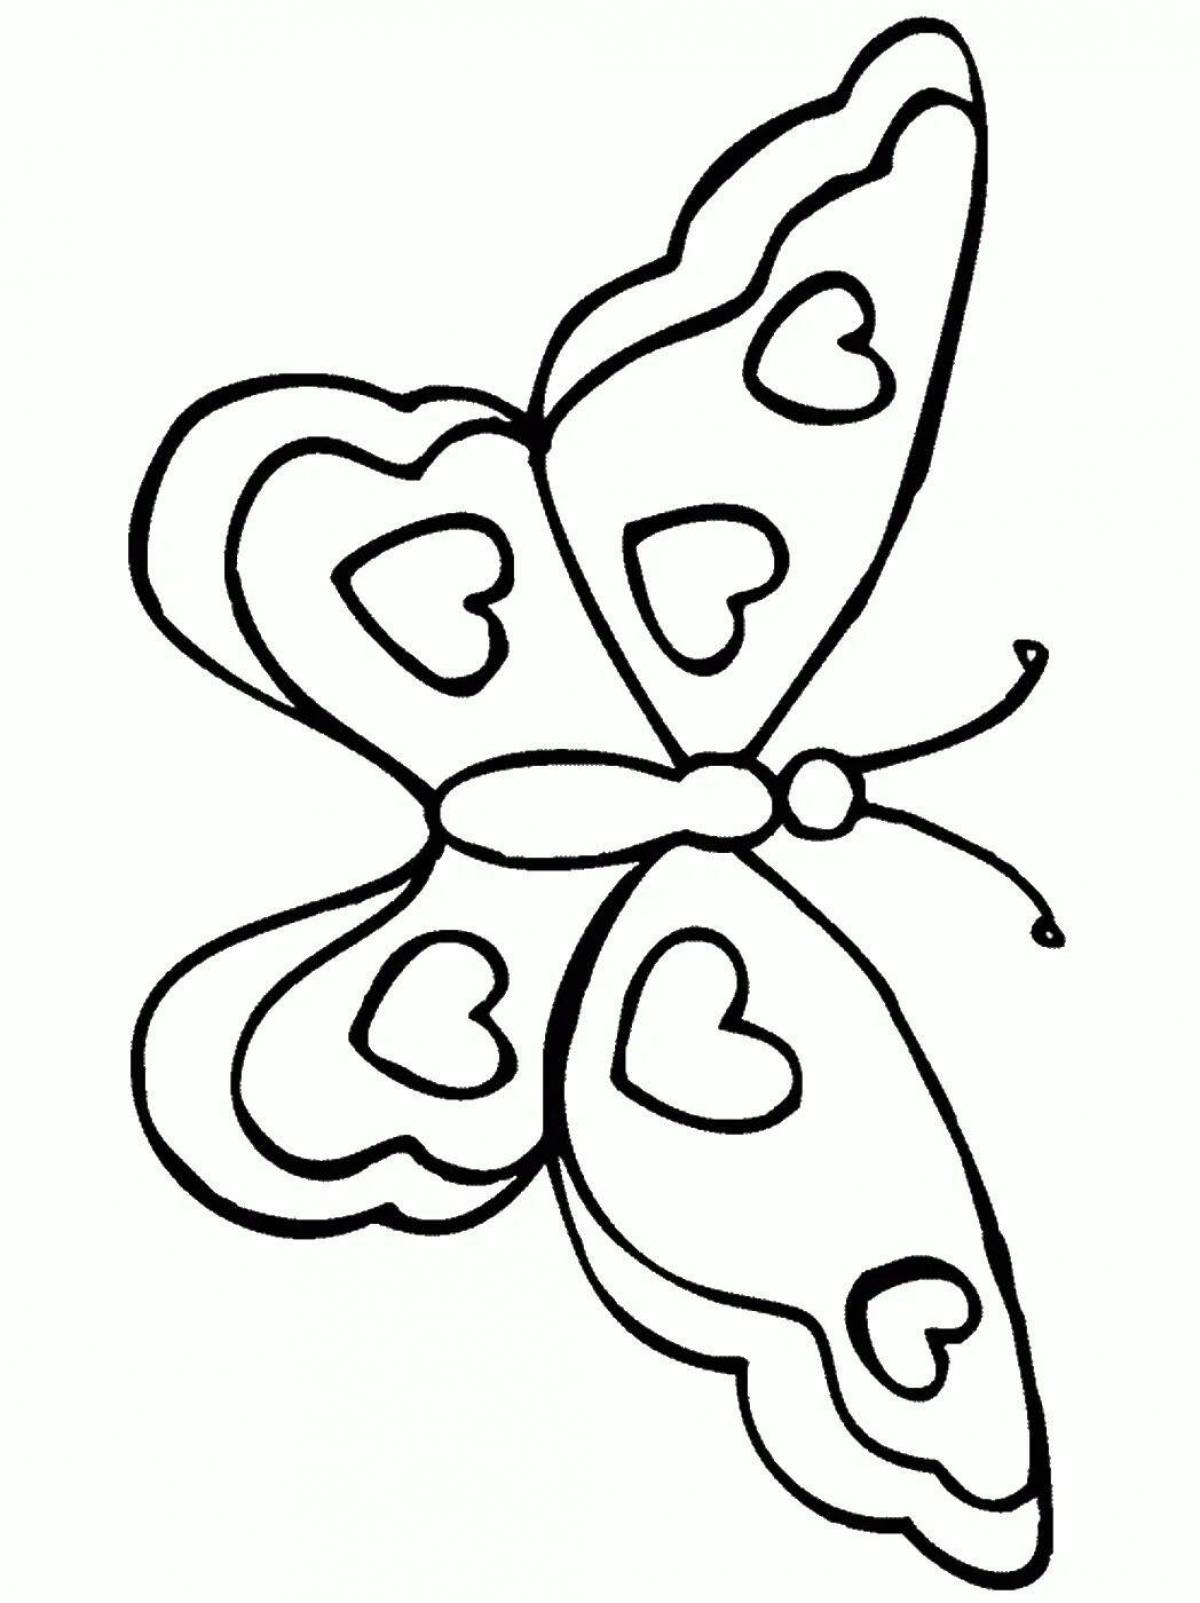 Рисунки для 7 лет. Трафареты для рисования для детей. Бабочка трафарет для раскрашивания. Трафарет бабочки для рисования. Бабочка шаблон для рисования.